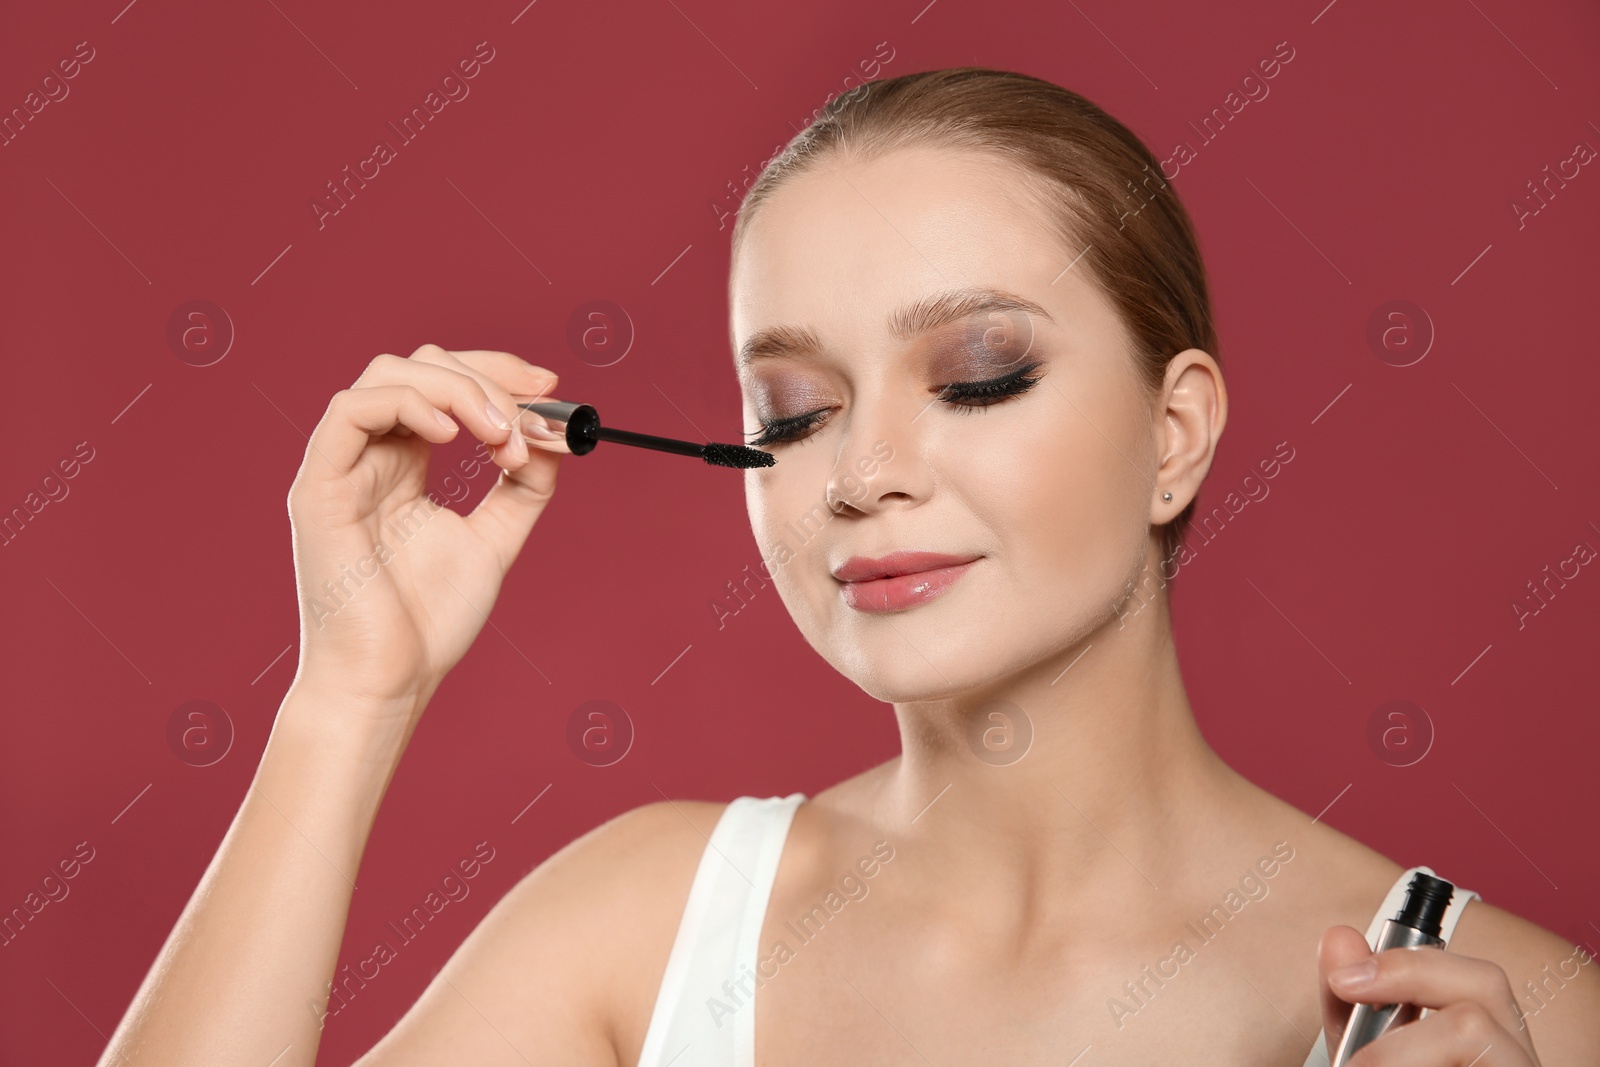 Photo of Beautiful woman applying mascara on pink background. Stylish makeup